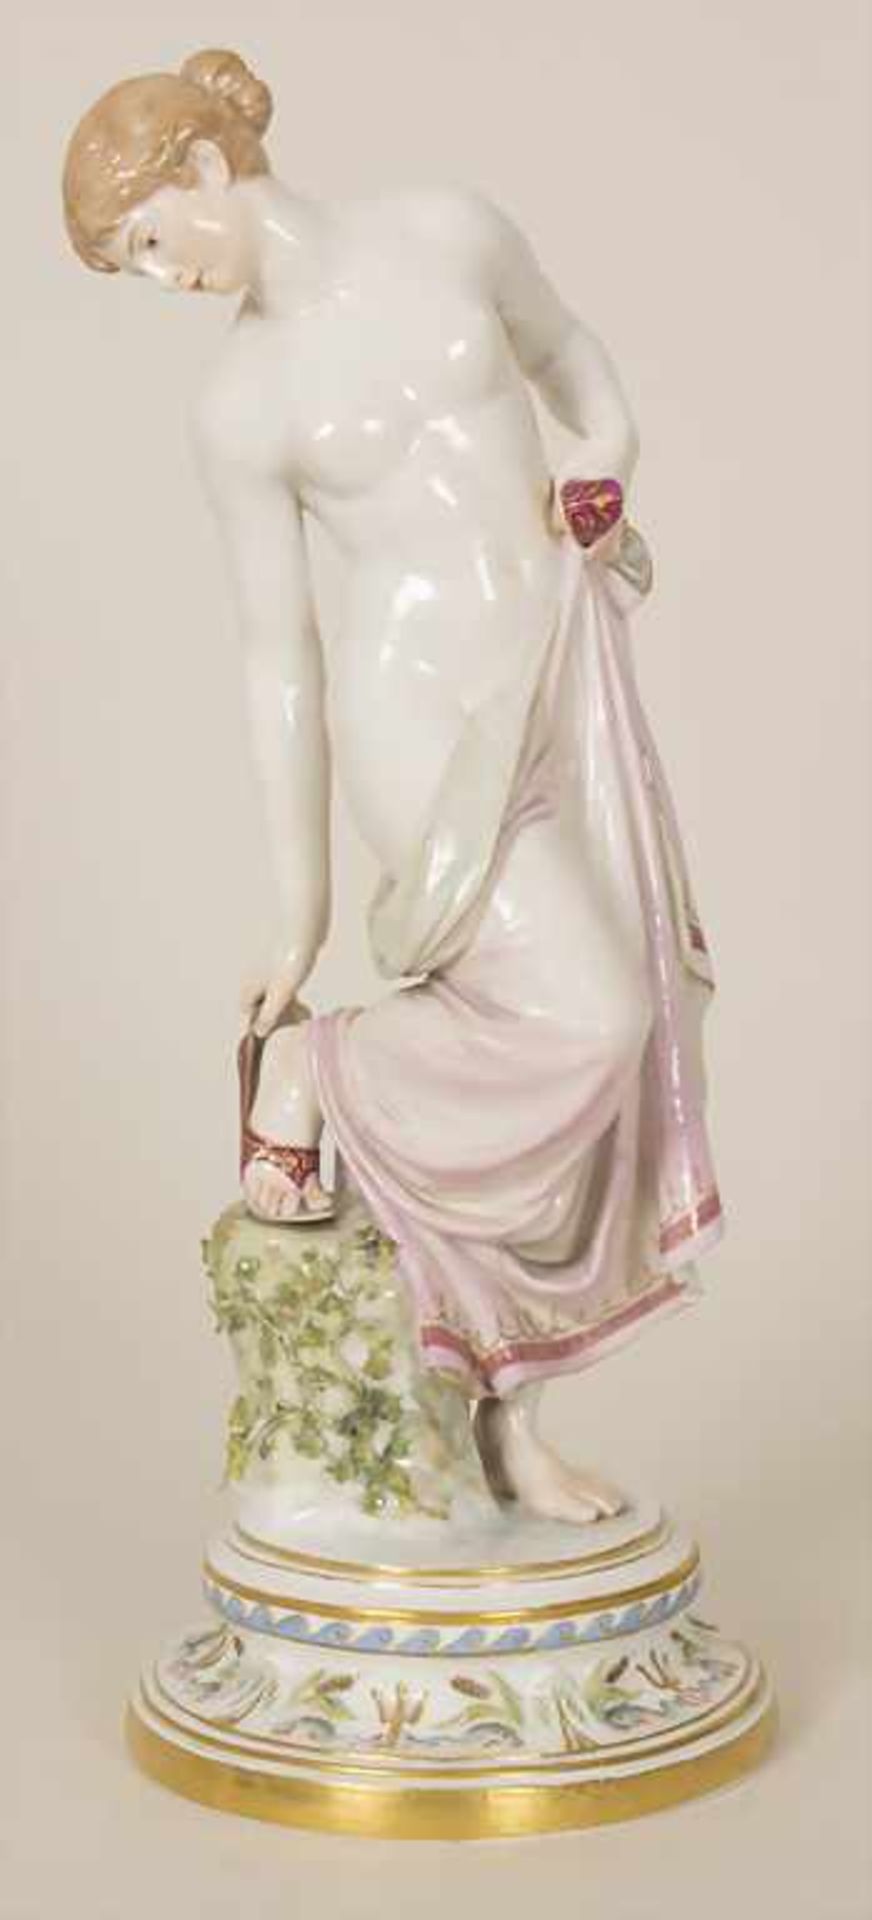 Porzellanfigur 'Nach dem Bade' / A porcelain figure 'After the bath', Robert Ockelmann (1849-1915)